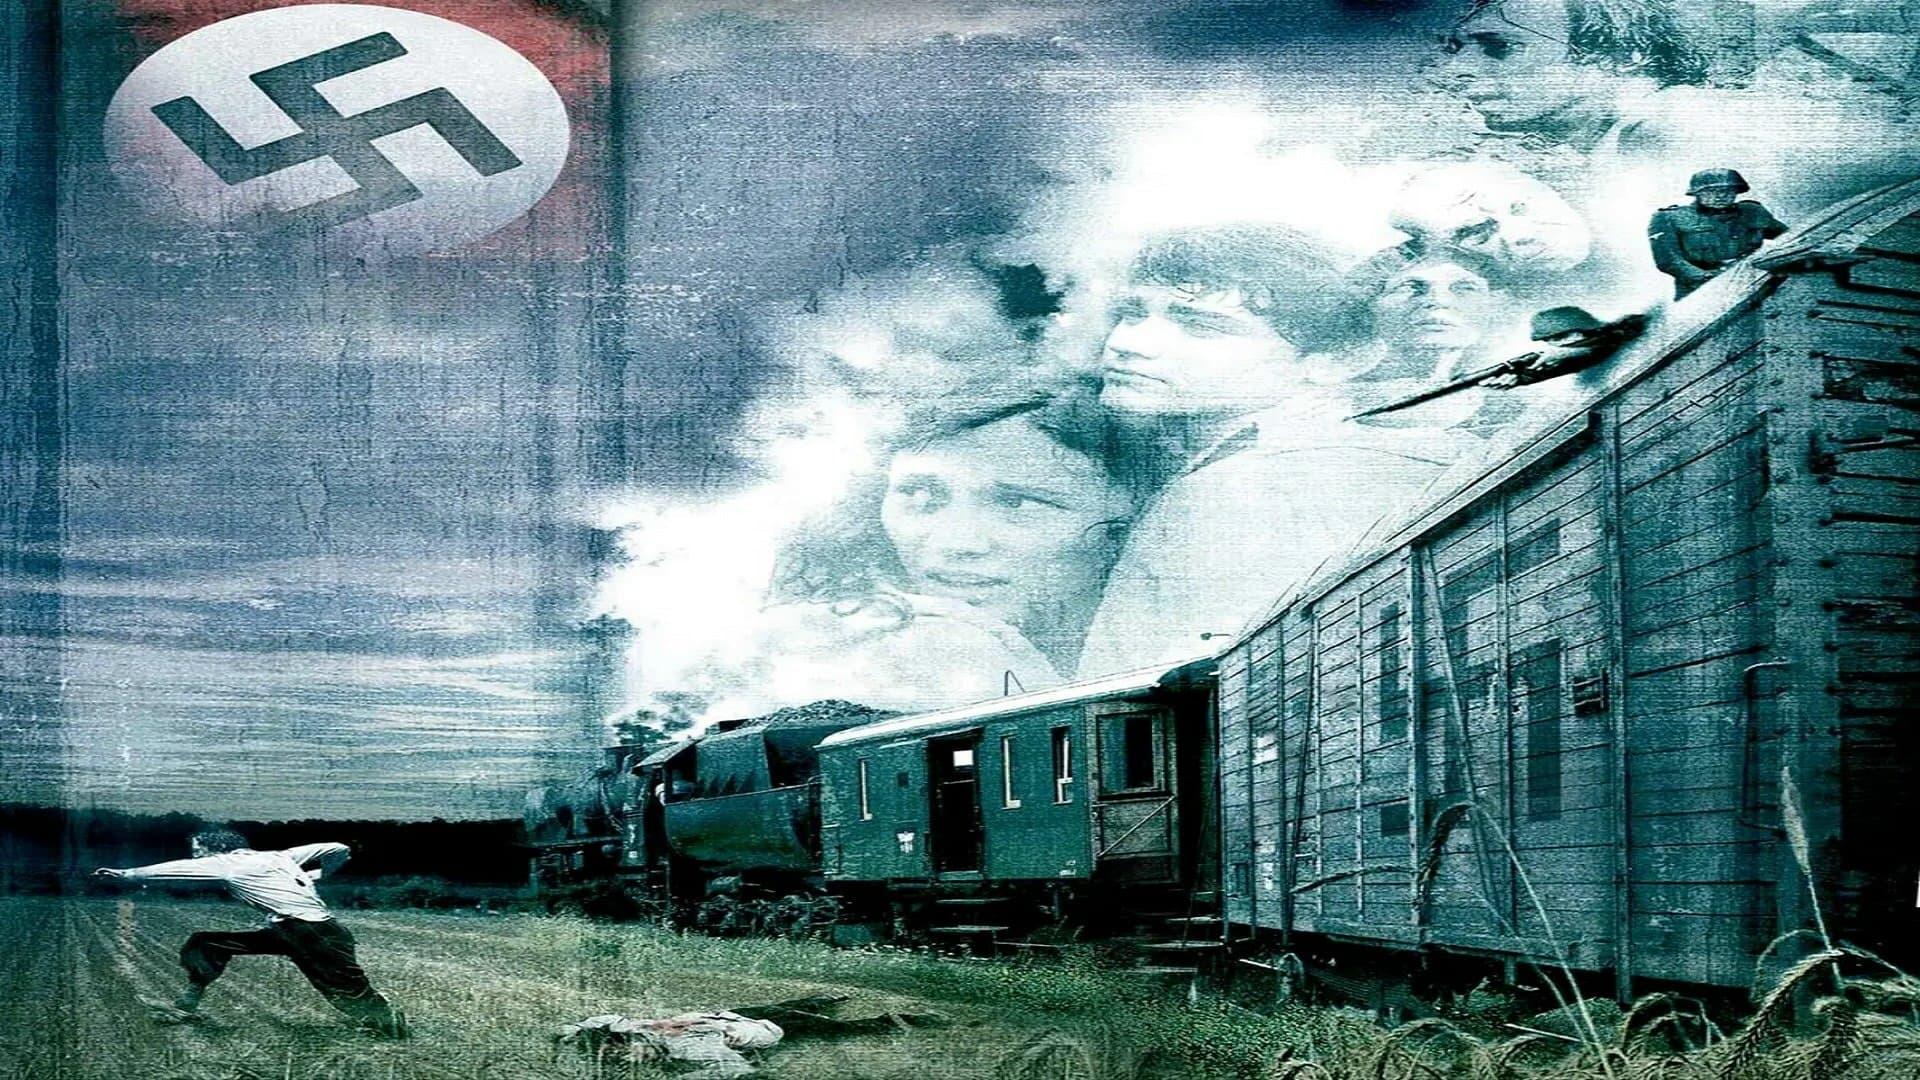 The Last Train backdrop